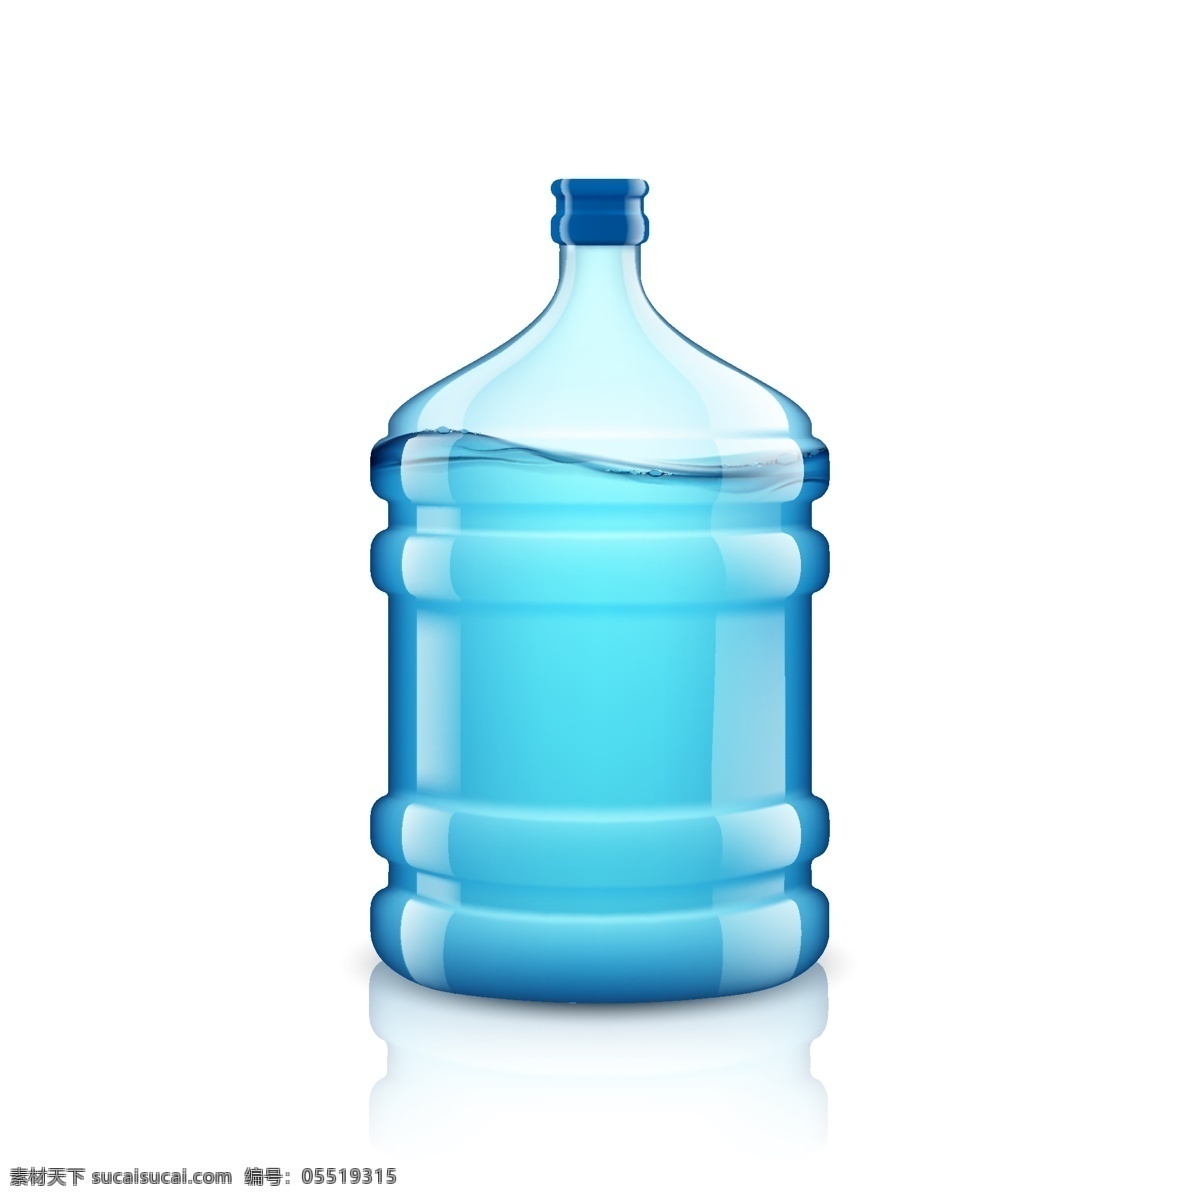 纯净水水桶 纯净水桶 纯净水包装 纯净水 水 矿泉水 水瓶